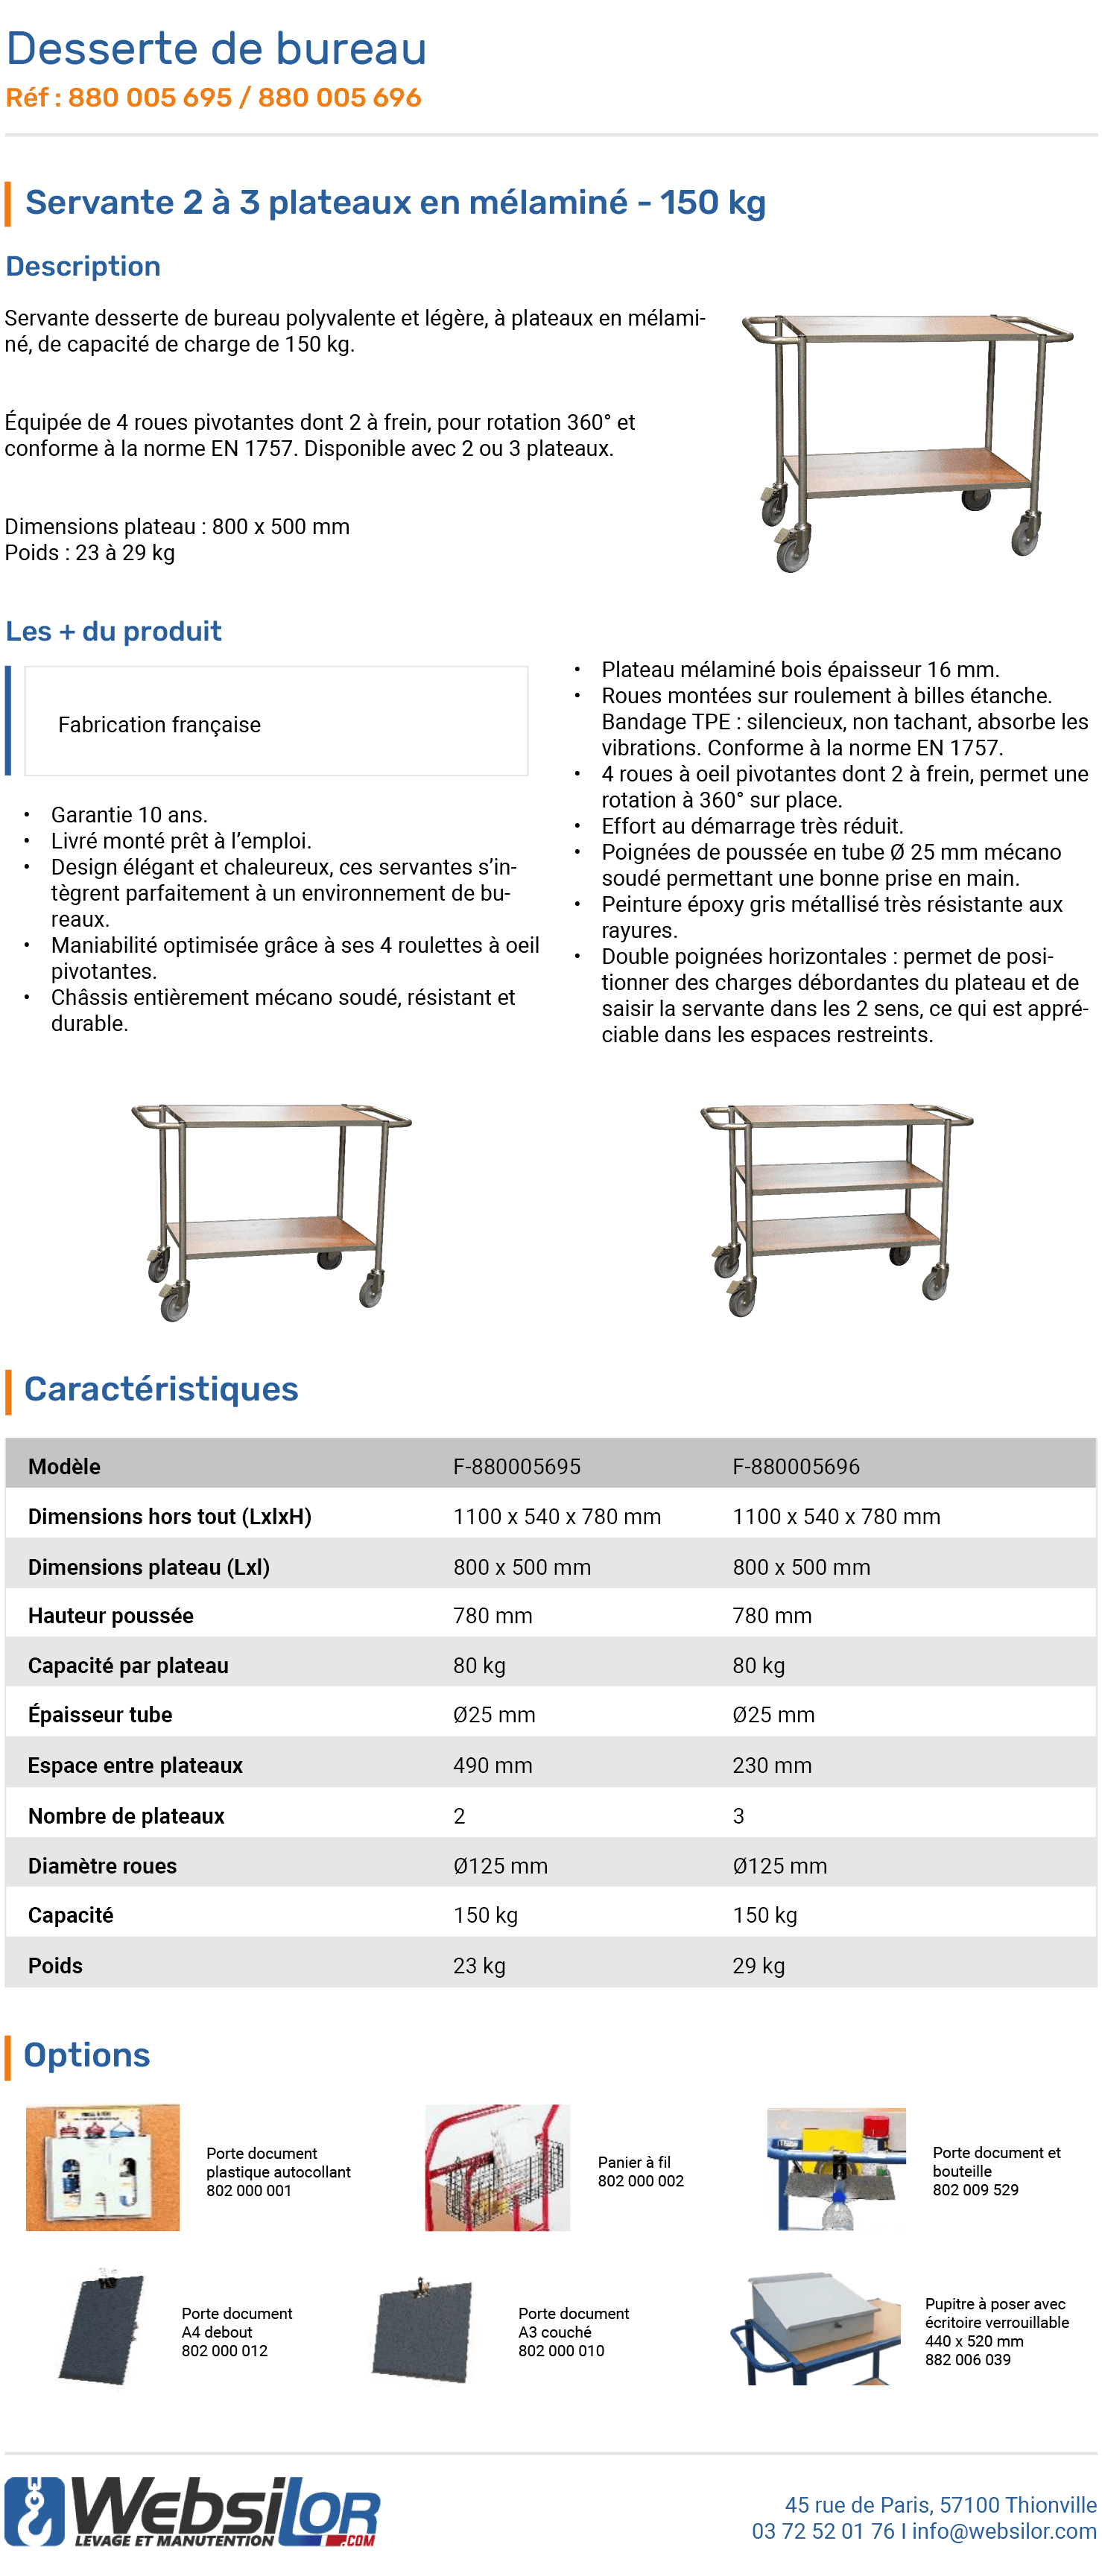 Informations technique de Servante 2 plateaux bois - 150 kg